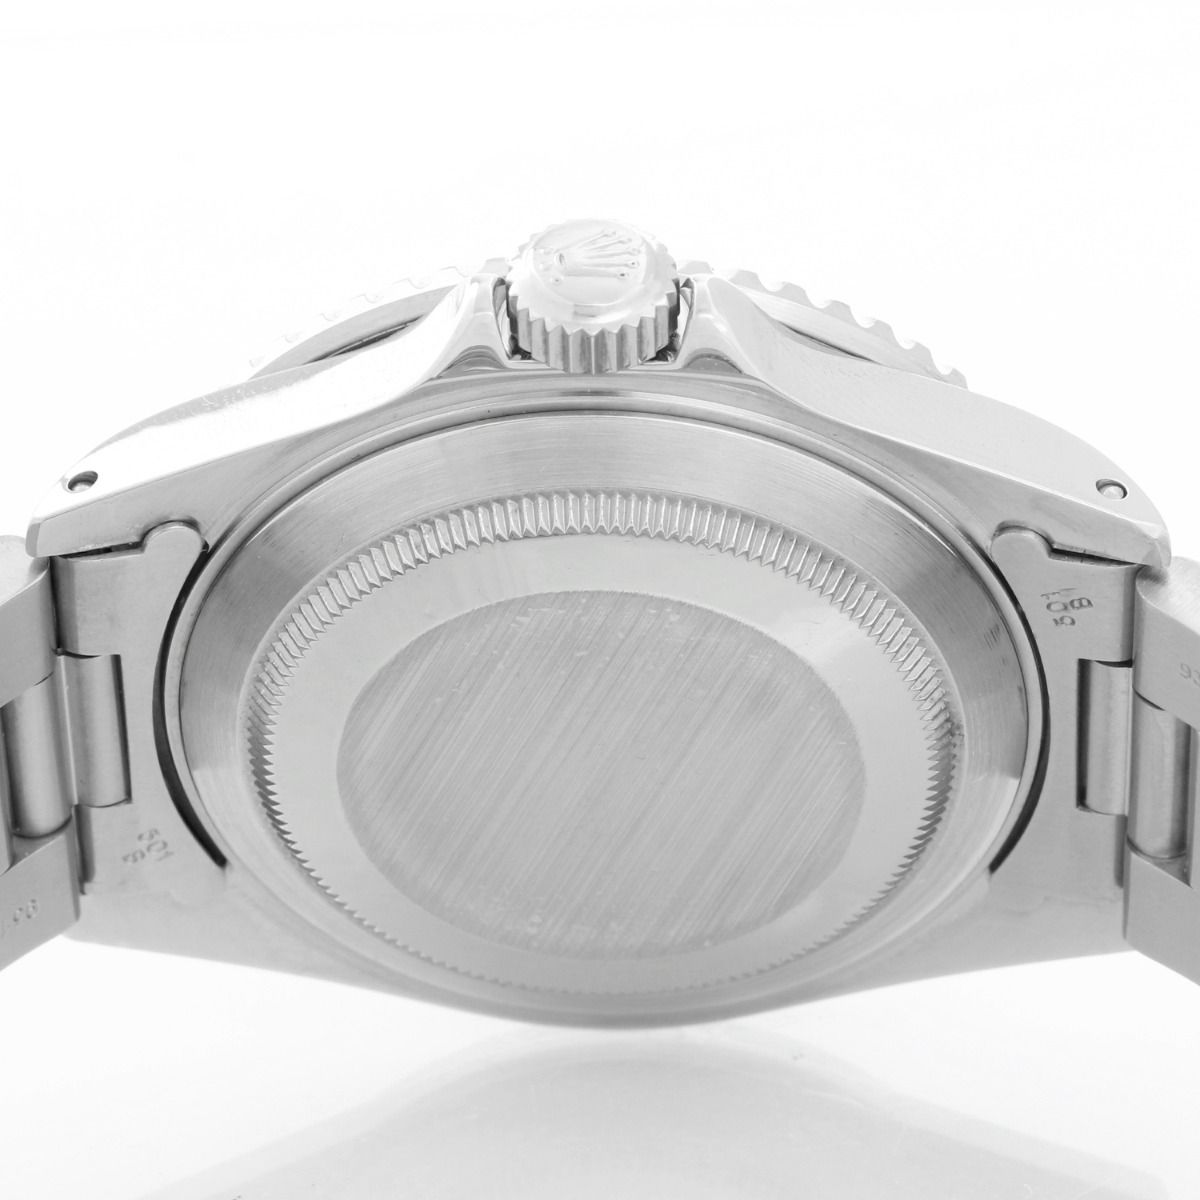 Rolex Submariner Men's Steel Watch with Green Dial & Bezel 16610